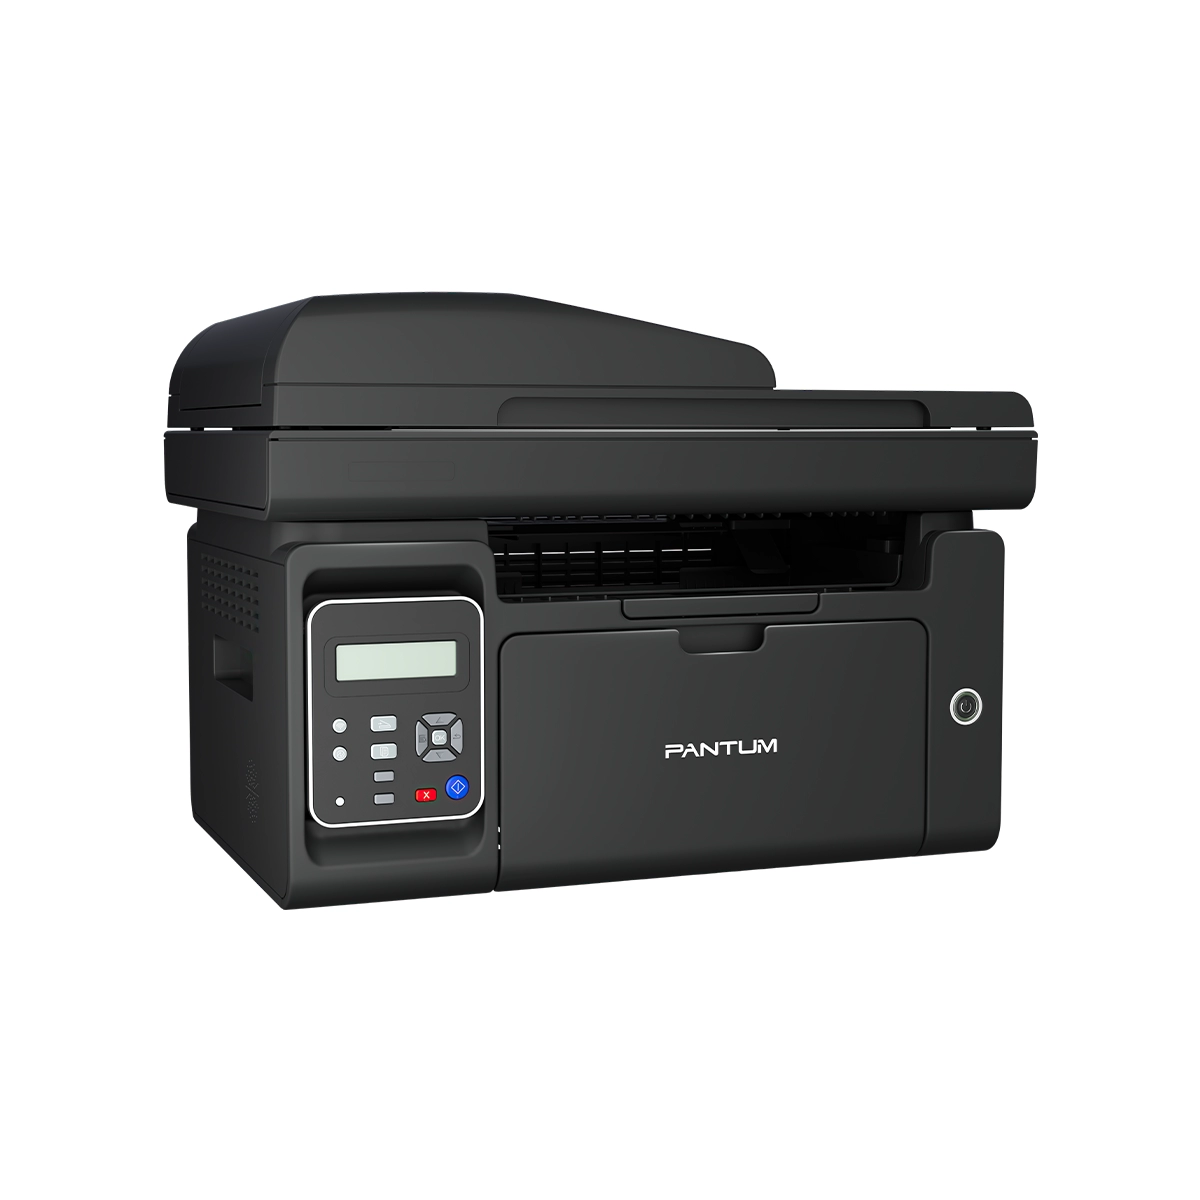 Pantum M6550NW Multifunction Laser Printer